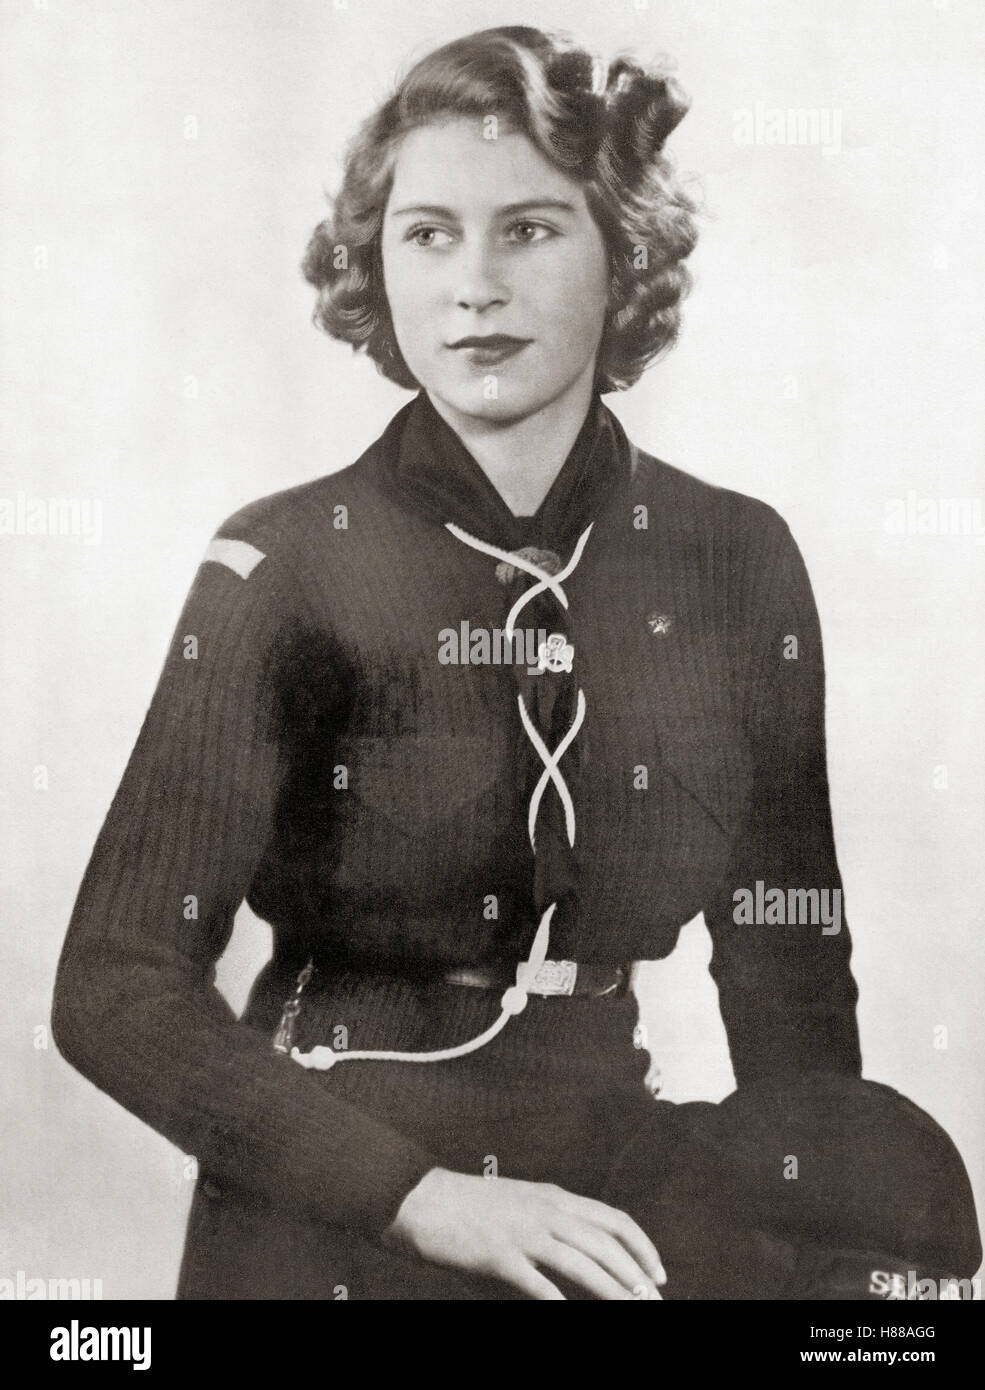 Prinzessin Elisabeth, zukünftige Elisabeth II., 1926 - 2022. Königin des Vereinigten Königreichs, Kanada, Australien und Neuseeland. Hier im Jahr 1943 in einer Pfadfinderuniform. Von einem Foto. Stockfoto